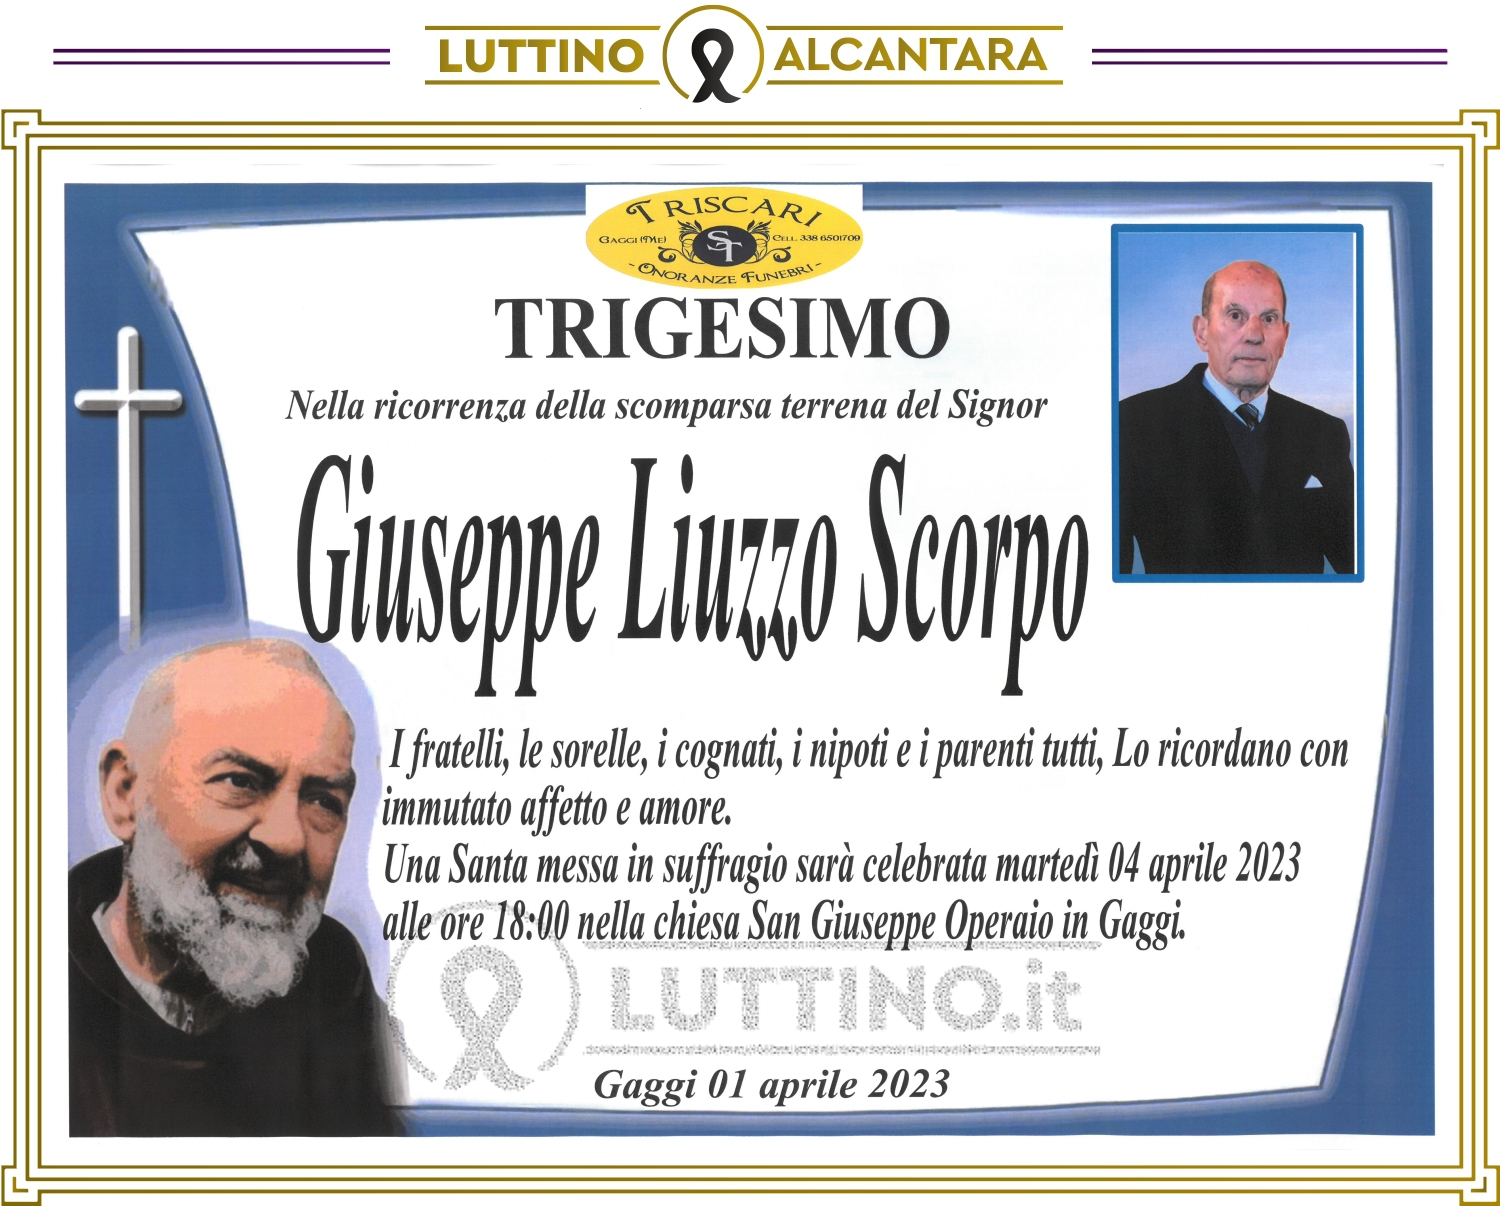 Giuseppe Liuzzo Scorpo